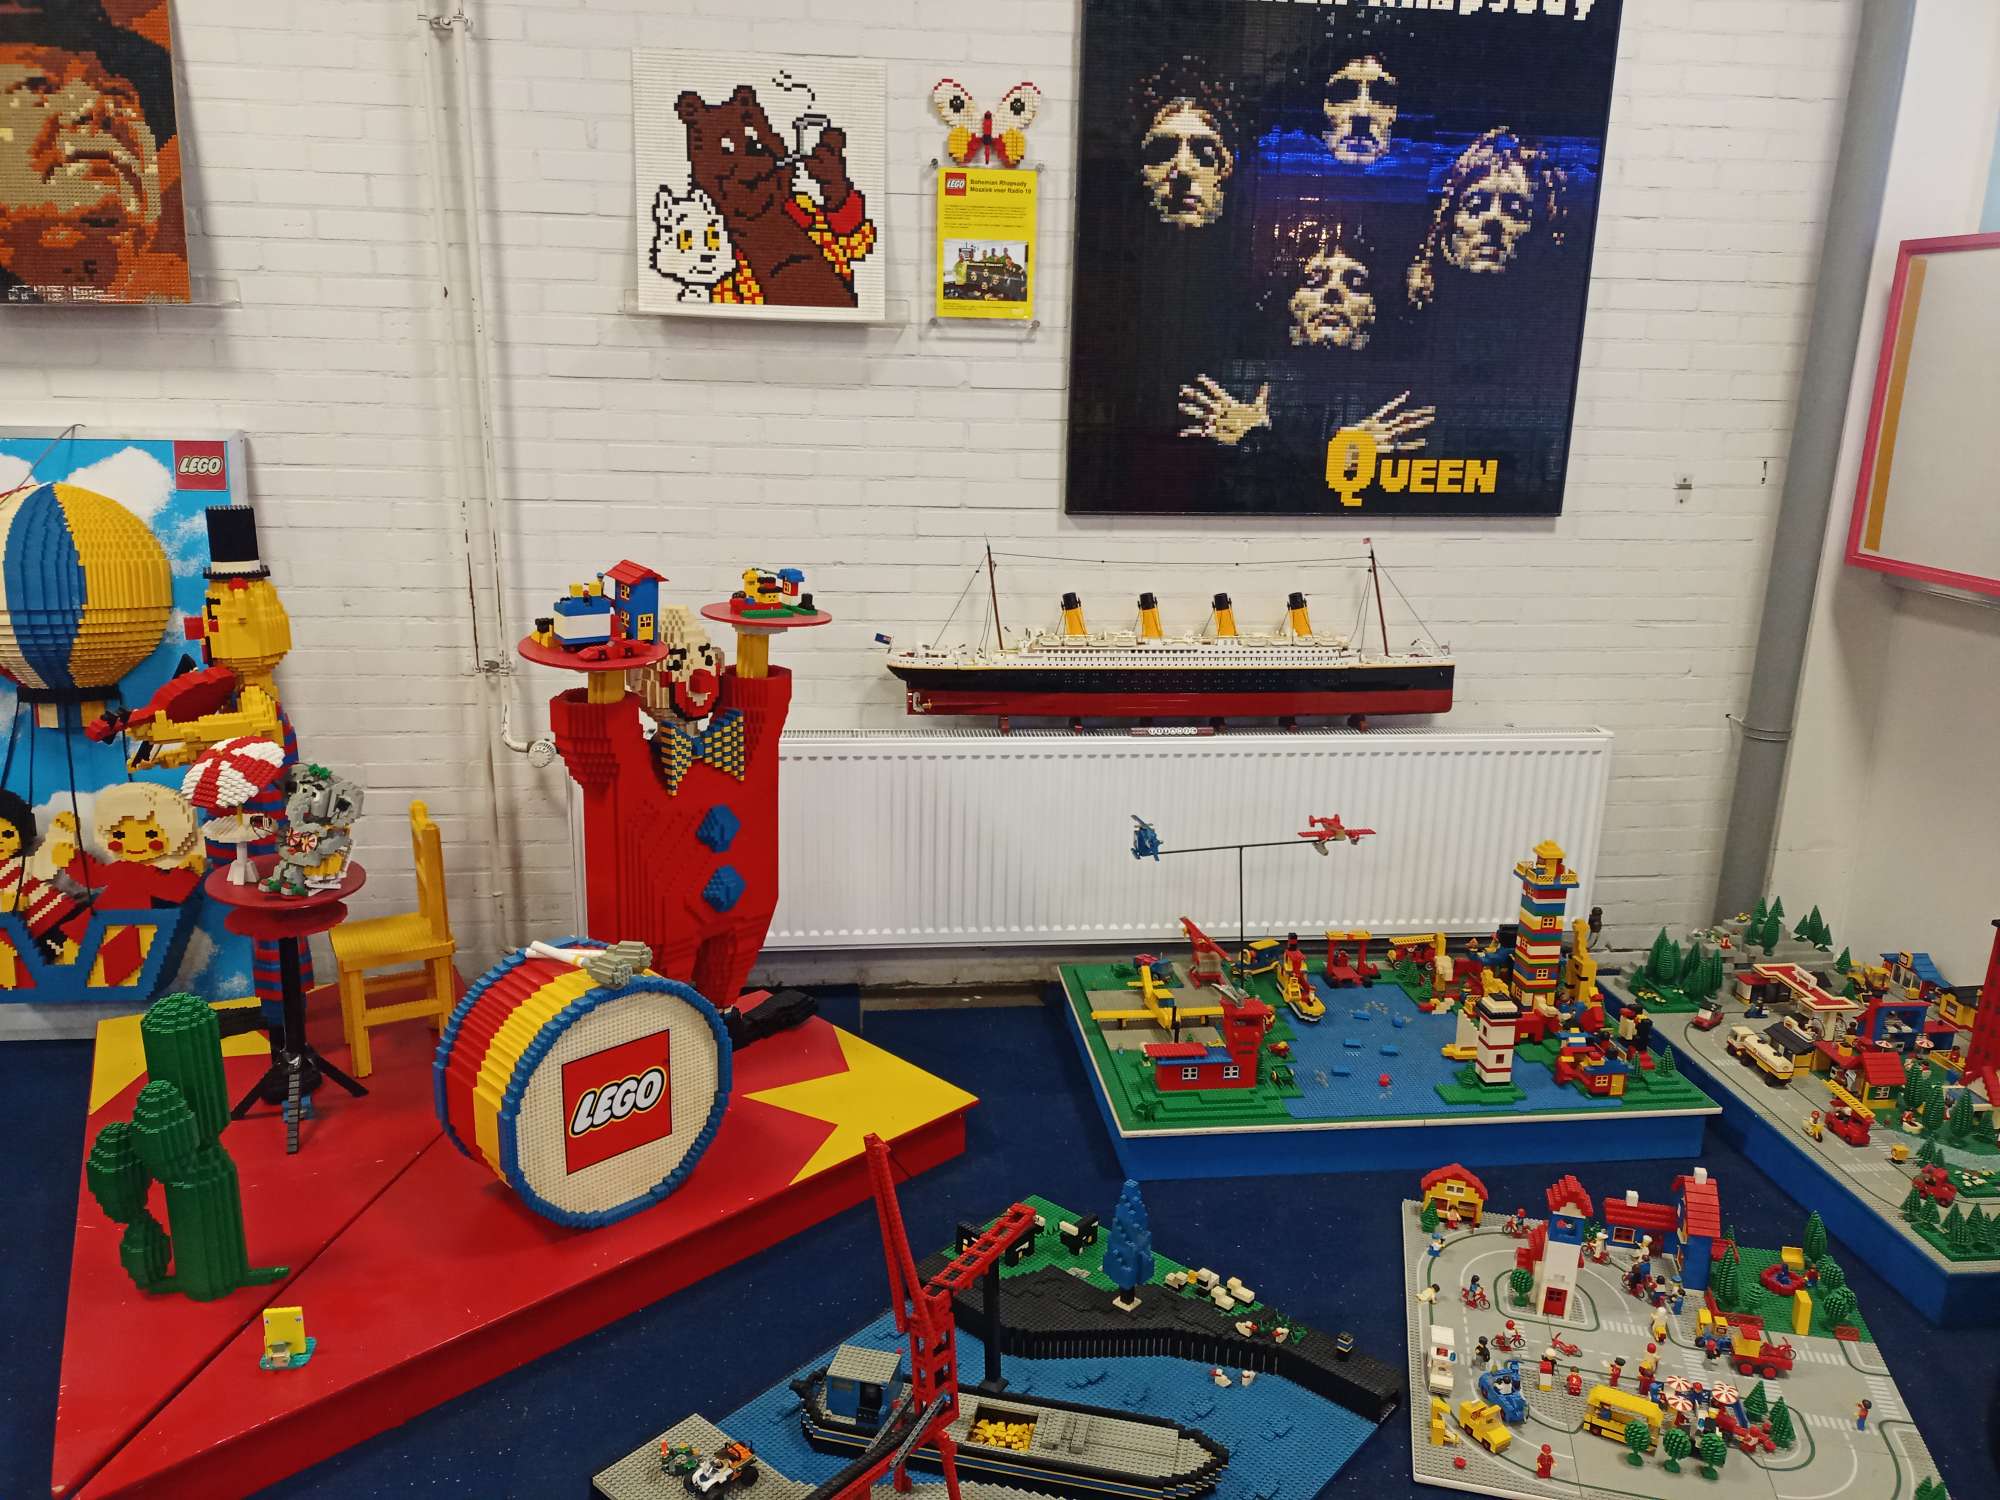 Op de foto staan verschillende bouwwerken van Lego en het lego logo. De bouwwerken die hier te zien zijn onder andere een portret van Queen, een trommel, een clown, een boot in een vaargeul en de titanic.